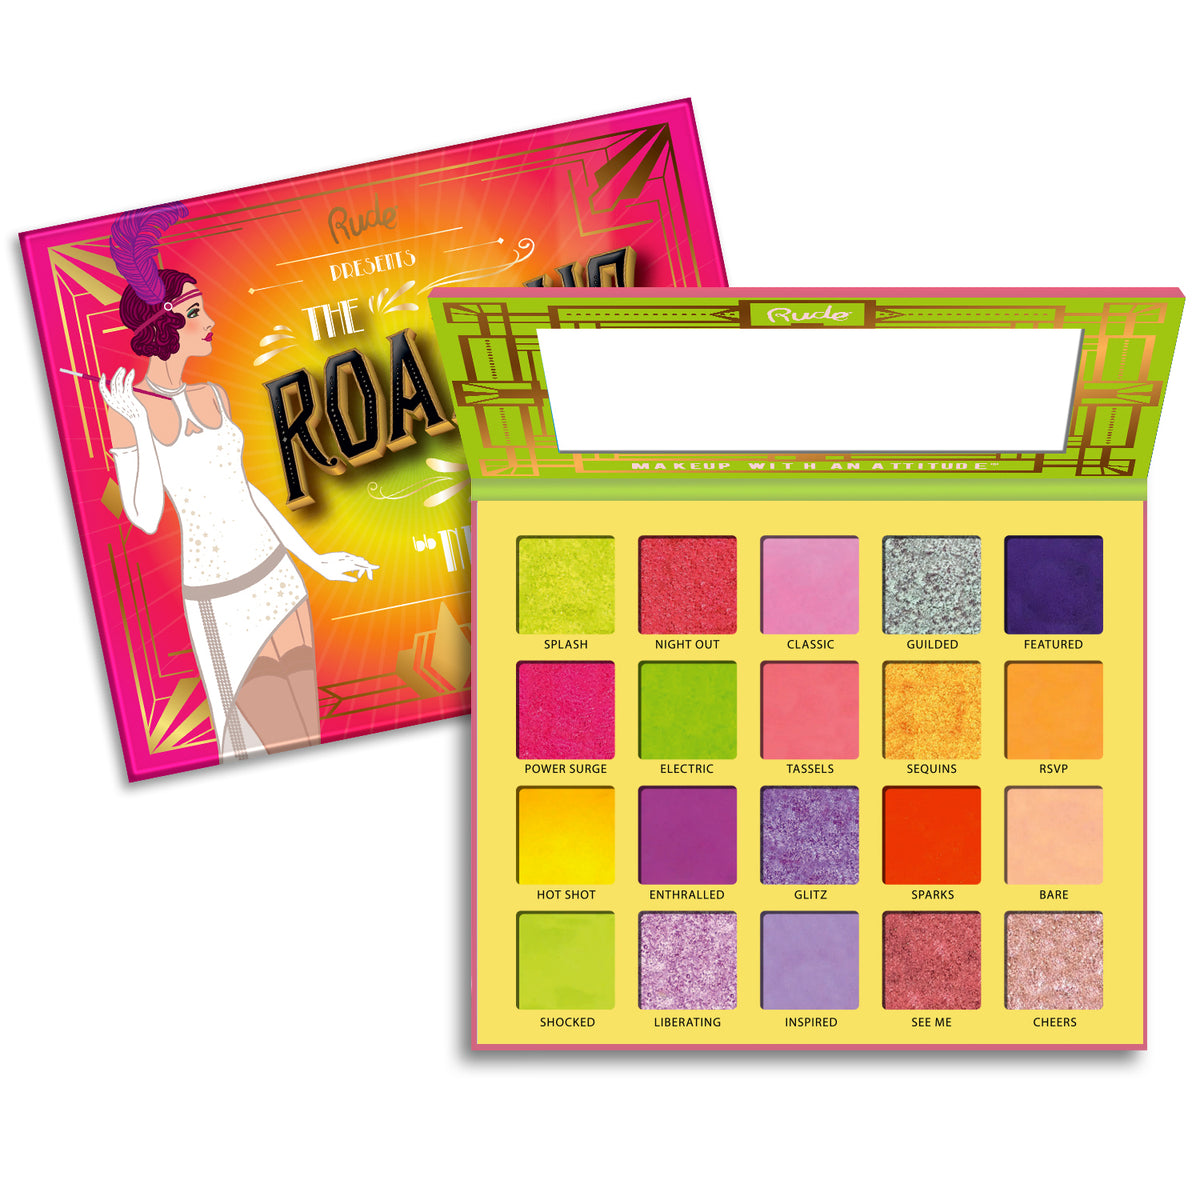 The Roaring 20's Eyeshadow Palette Cardboard Display Set, 24 pcs